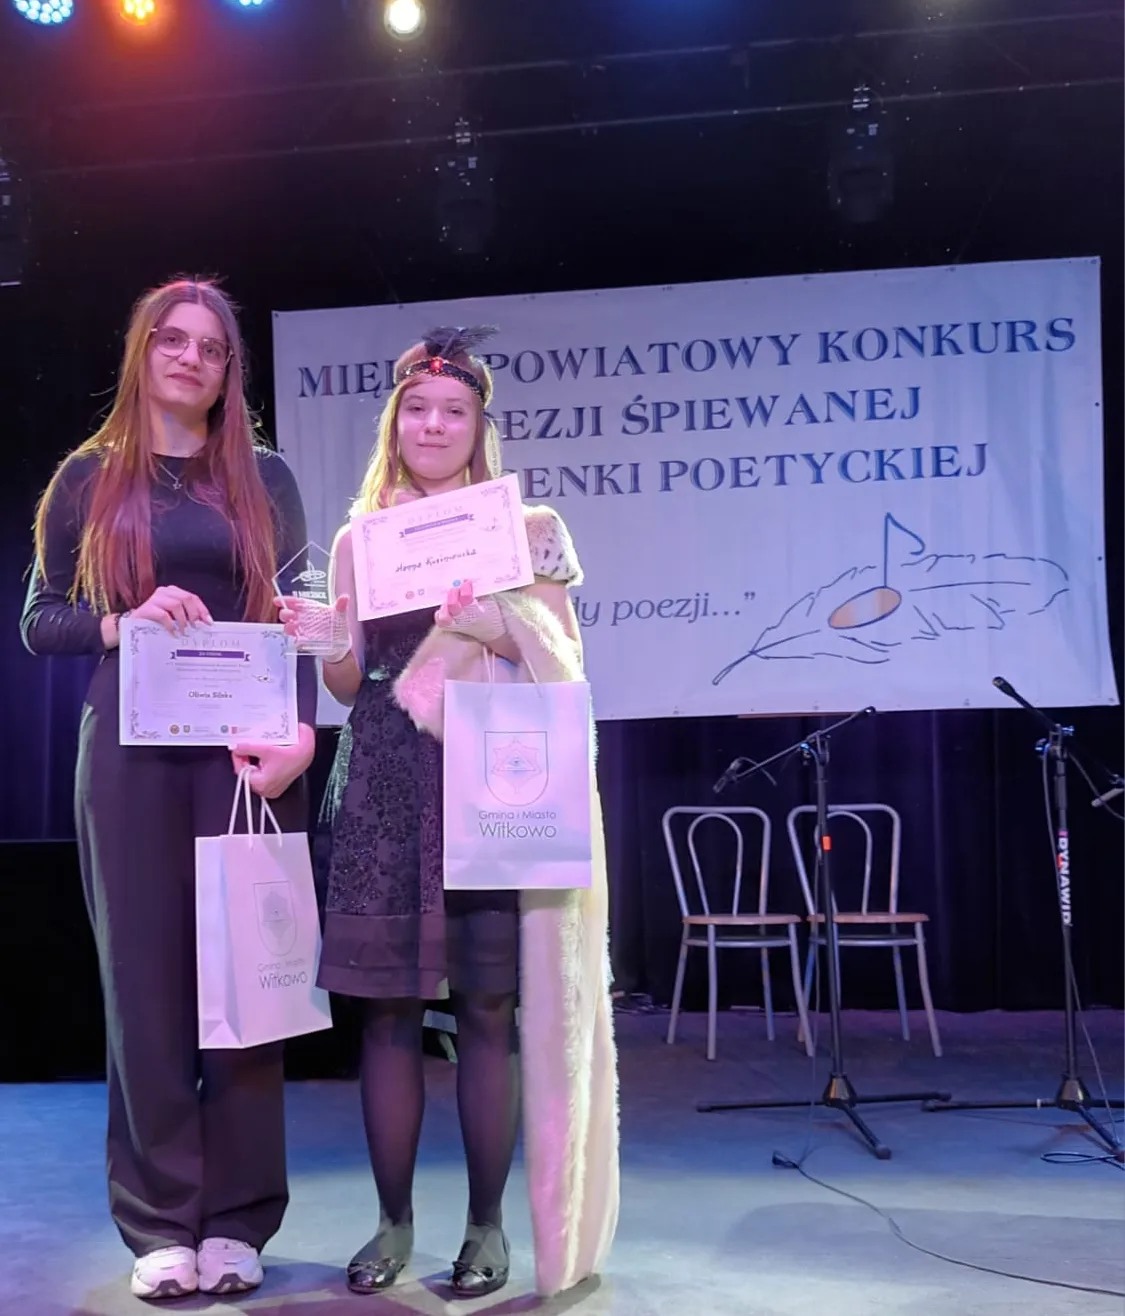 V Międzypowiatowy Konkurs Poezji Śpiewanej i Piosenki Poetyckiej